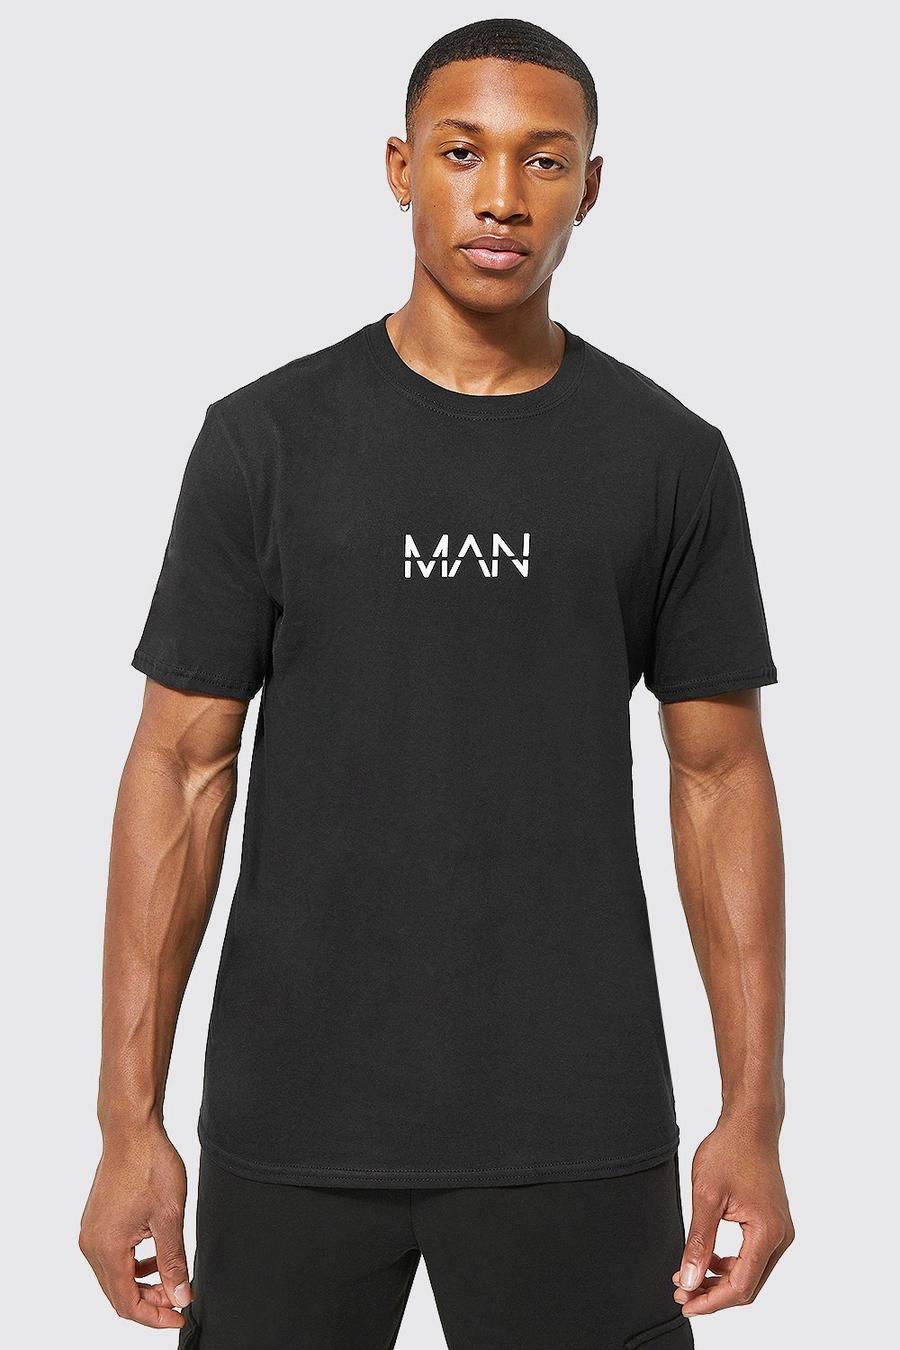 Camiseta MAN Original, Black nero image number 1